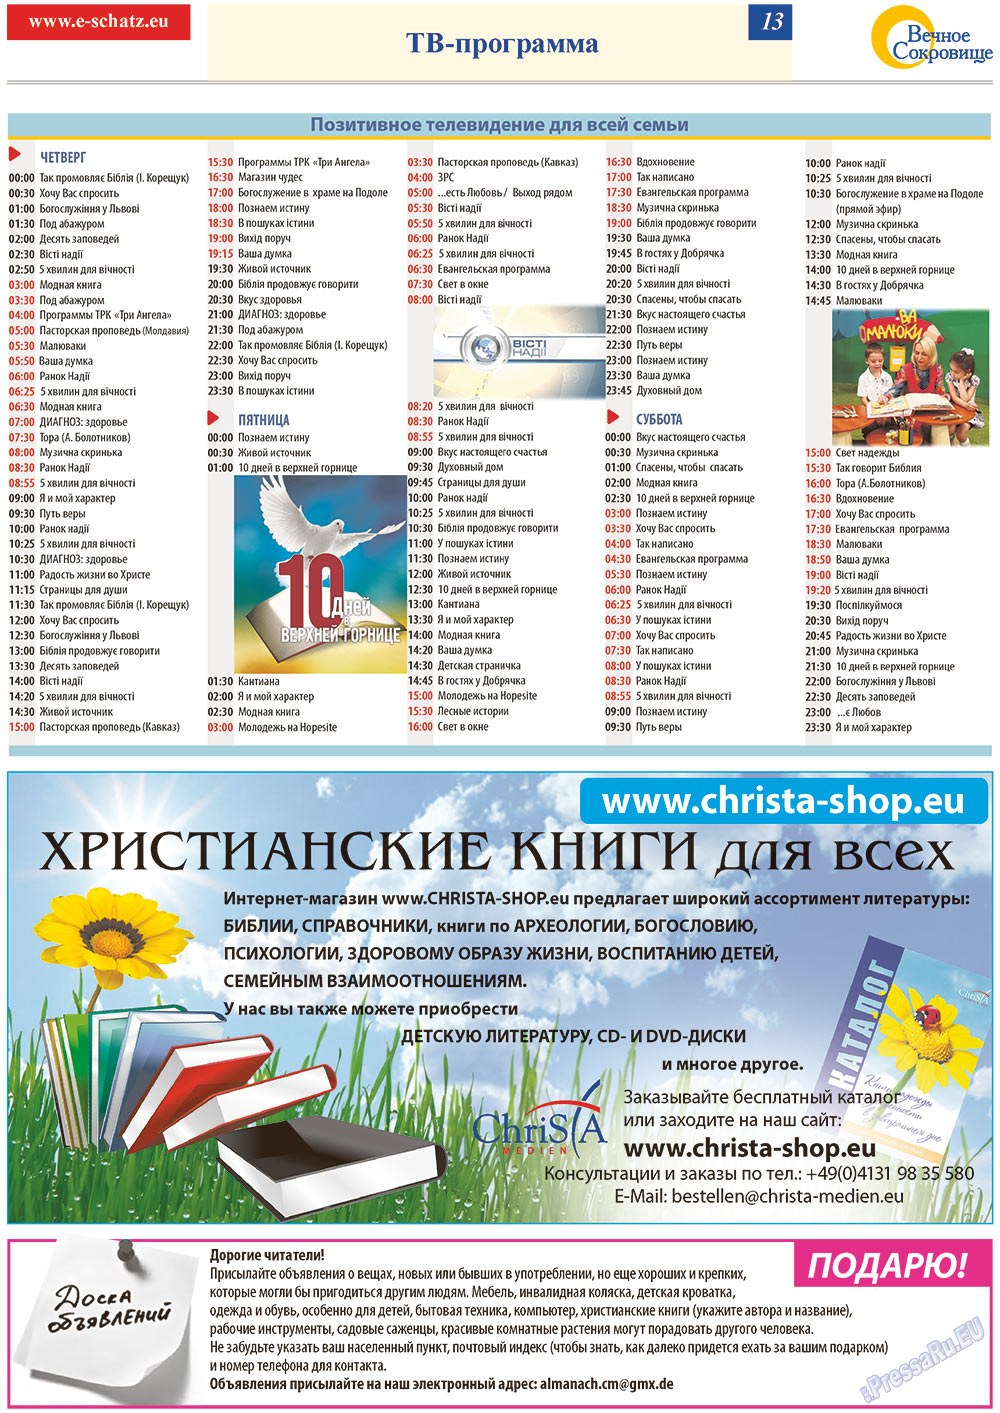 Вечное сокровище, газета. 2012 №6 стр.13